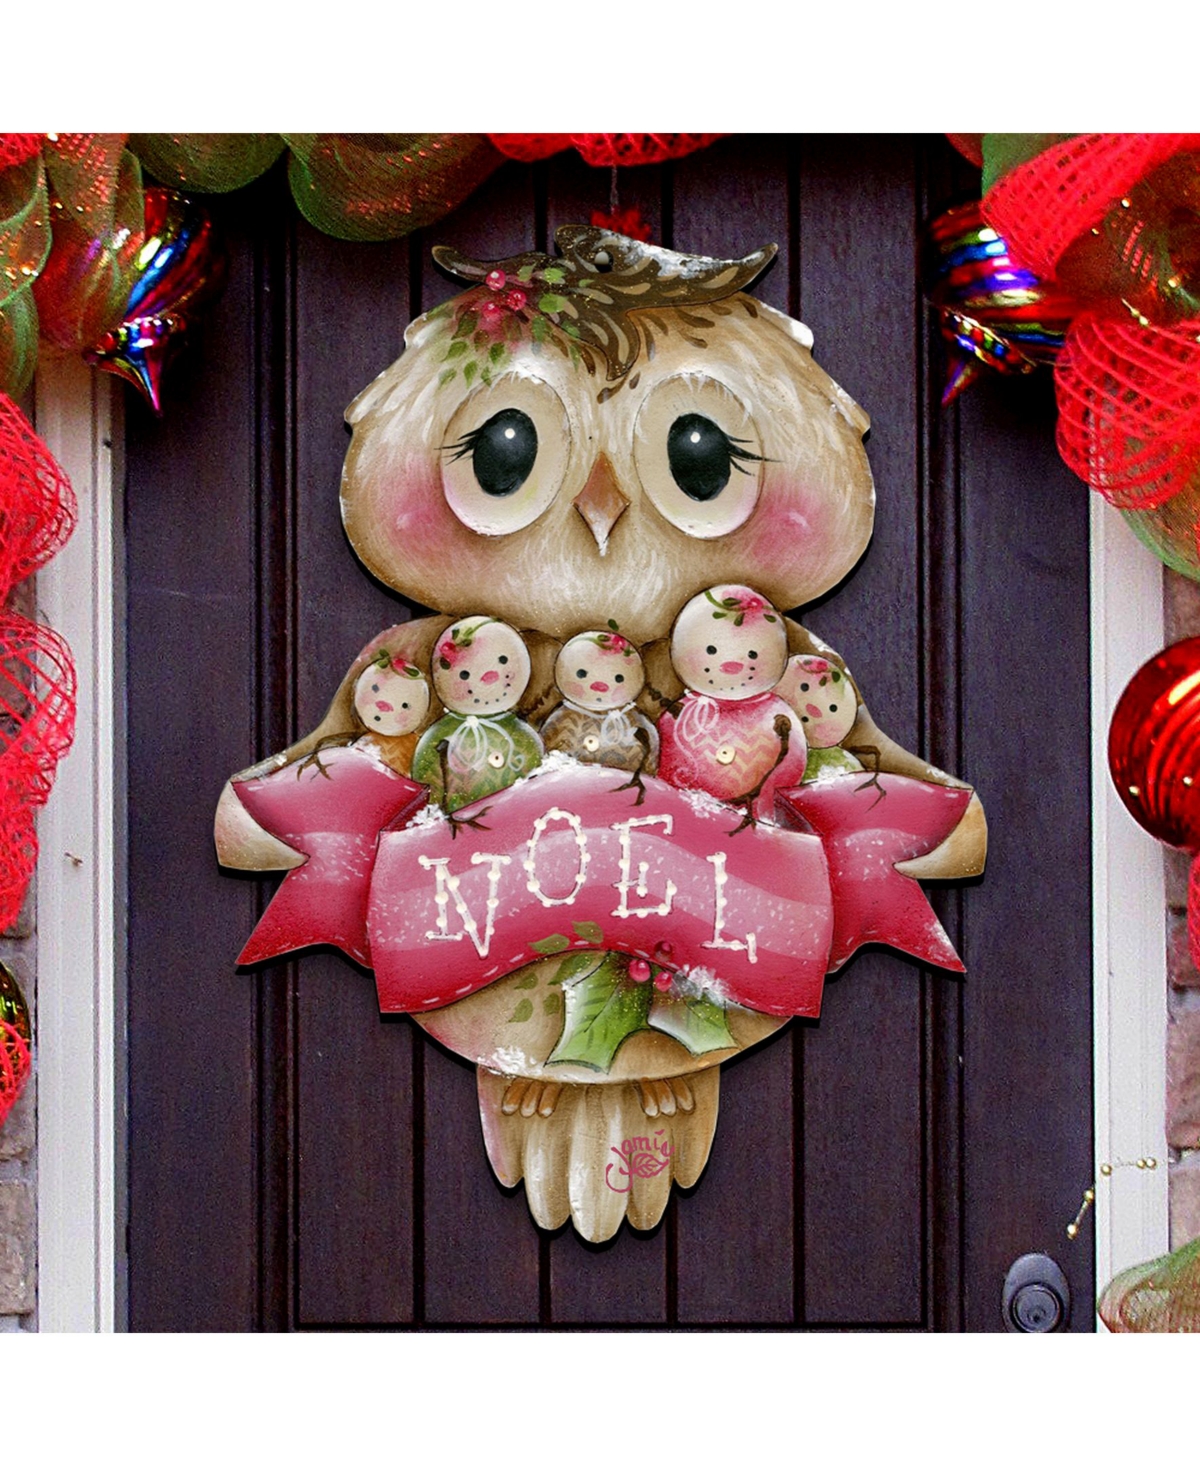 Jamie Mills Price Christmas Owl You Need Is Love Wooden Decorative Door Hanger - Multi